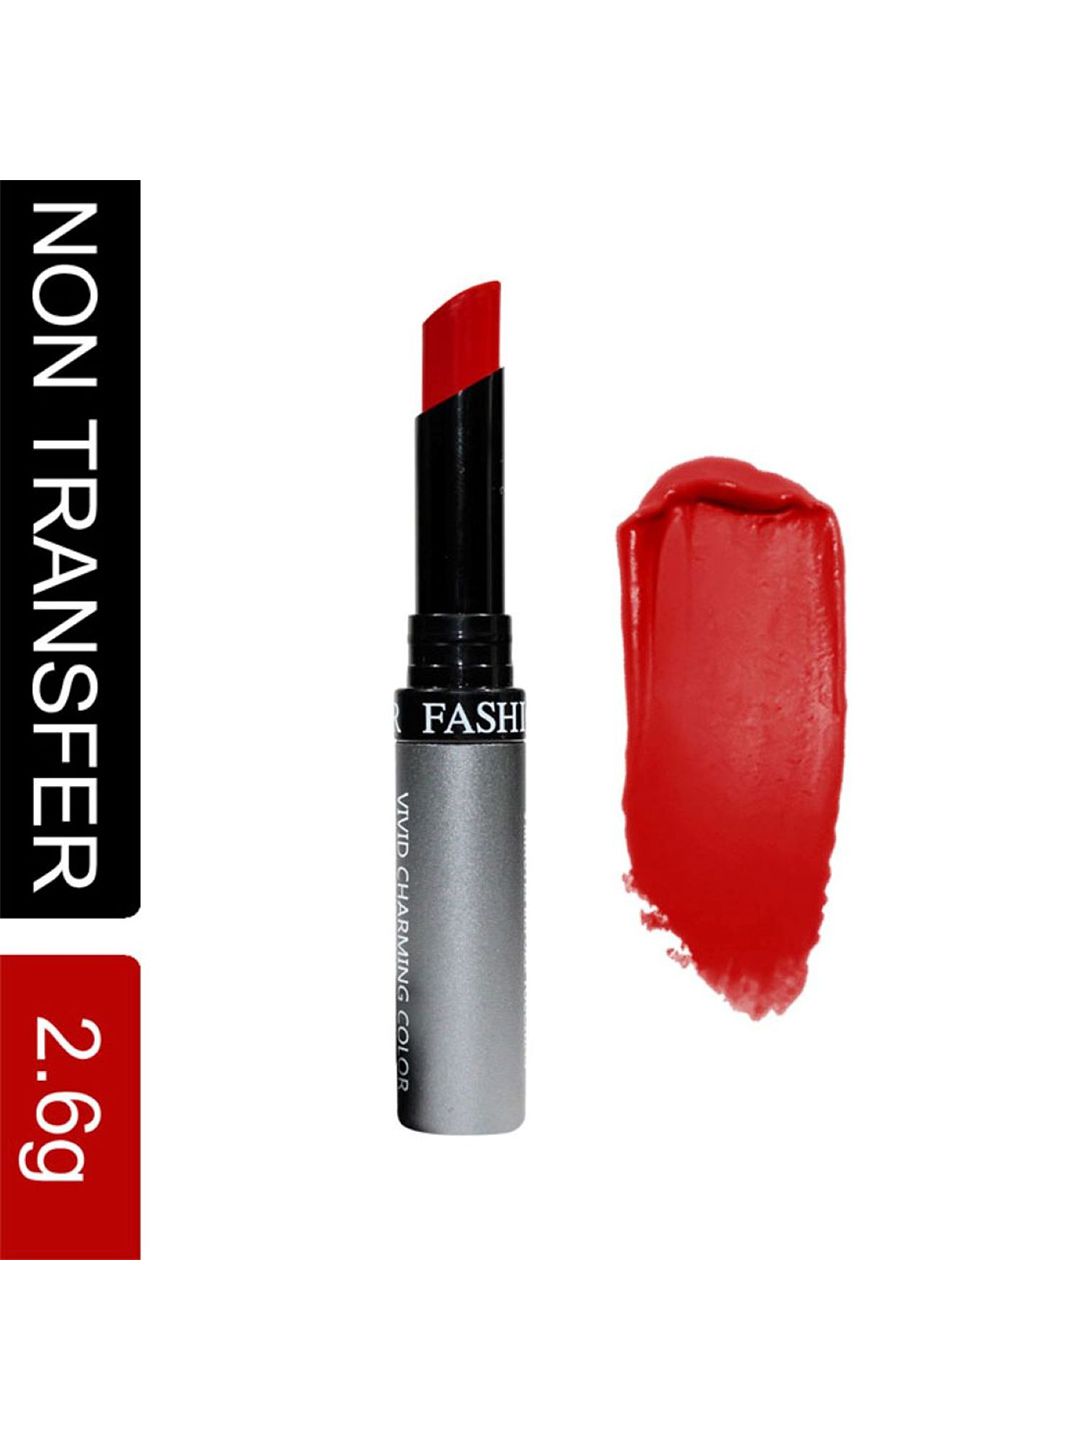 Fashion Colour Kiss Lip No Transfer Lipstick - Dull Red 75 Price in India